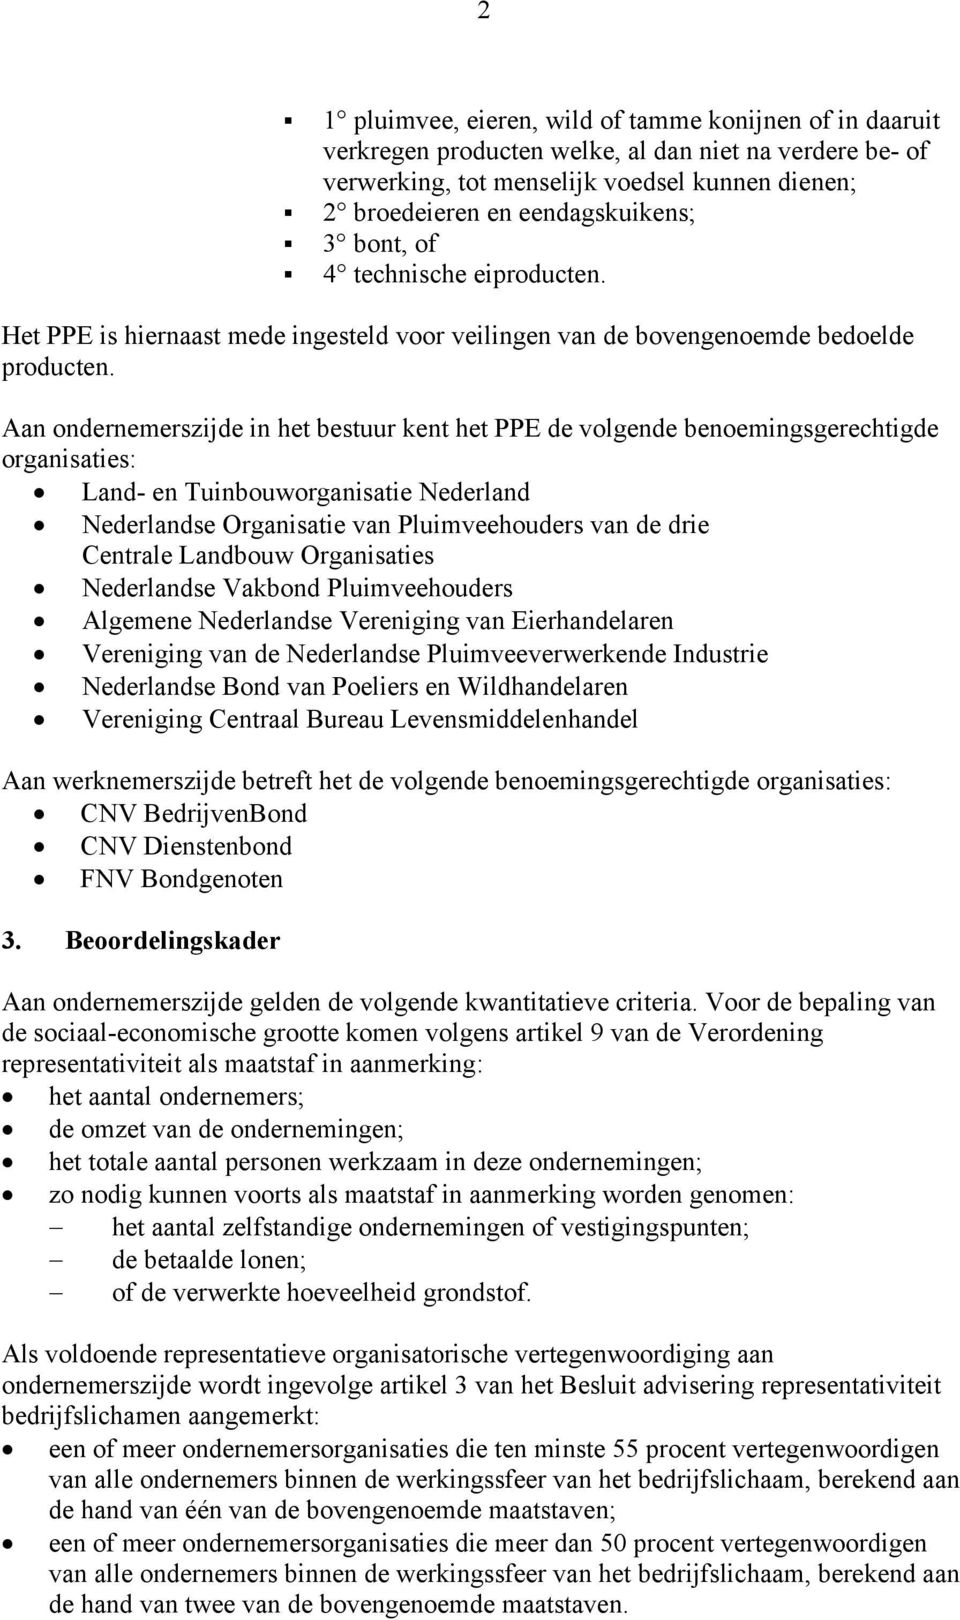 Aan ondernemerszijde in het bestuur kent het PPE de volgende benoemingsgerechtigde organisaties: Land- en Tuinbouworganisatie Nederland Nederlandse Organisatie van Pluimveehouders van de drie